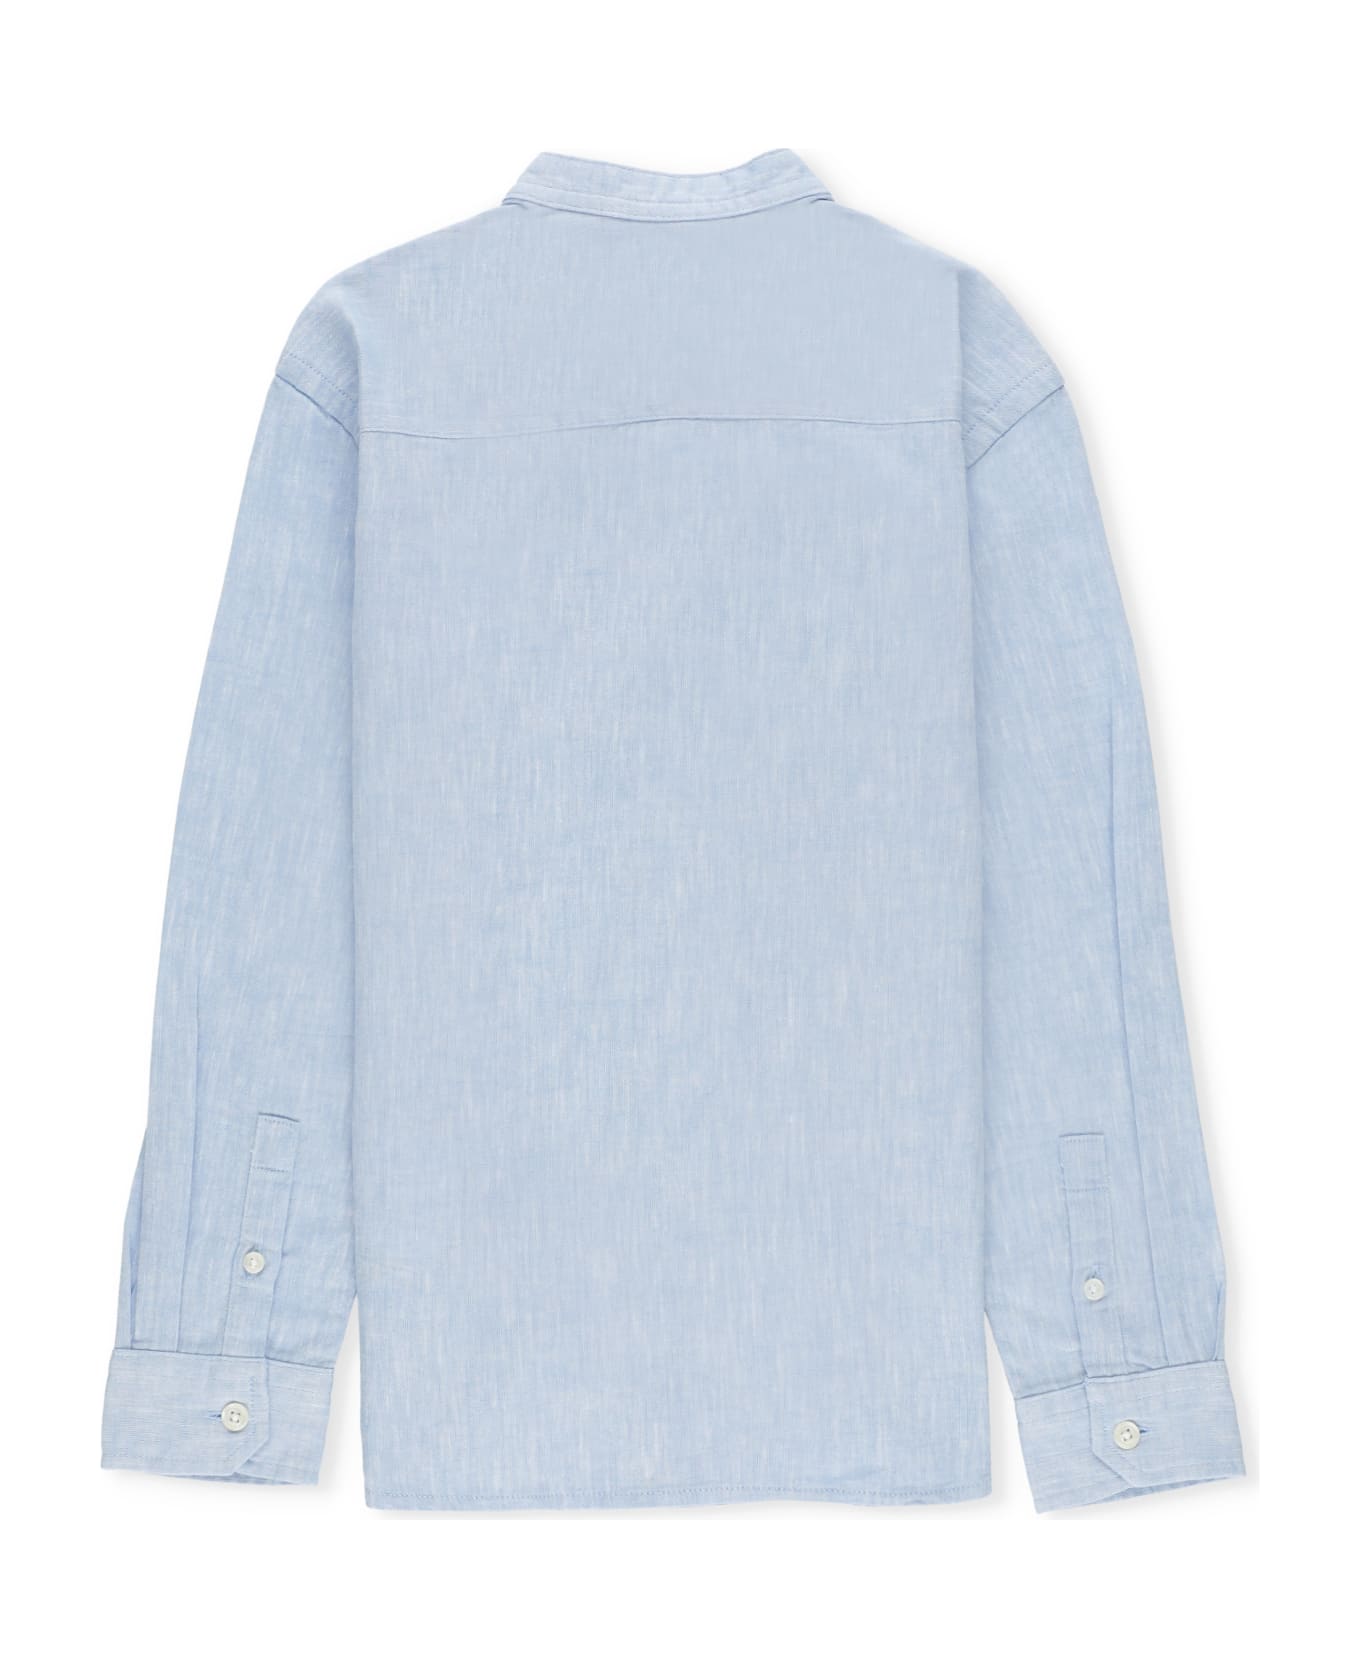 Woolrich Cotton And Linen Shirt - Light Blue